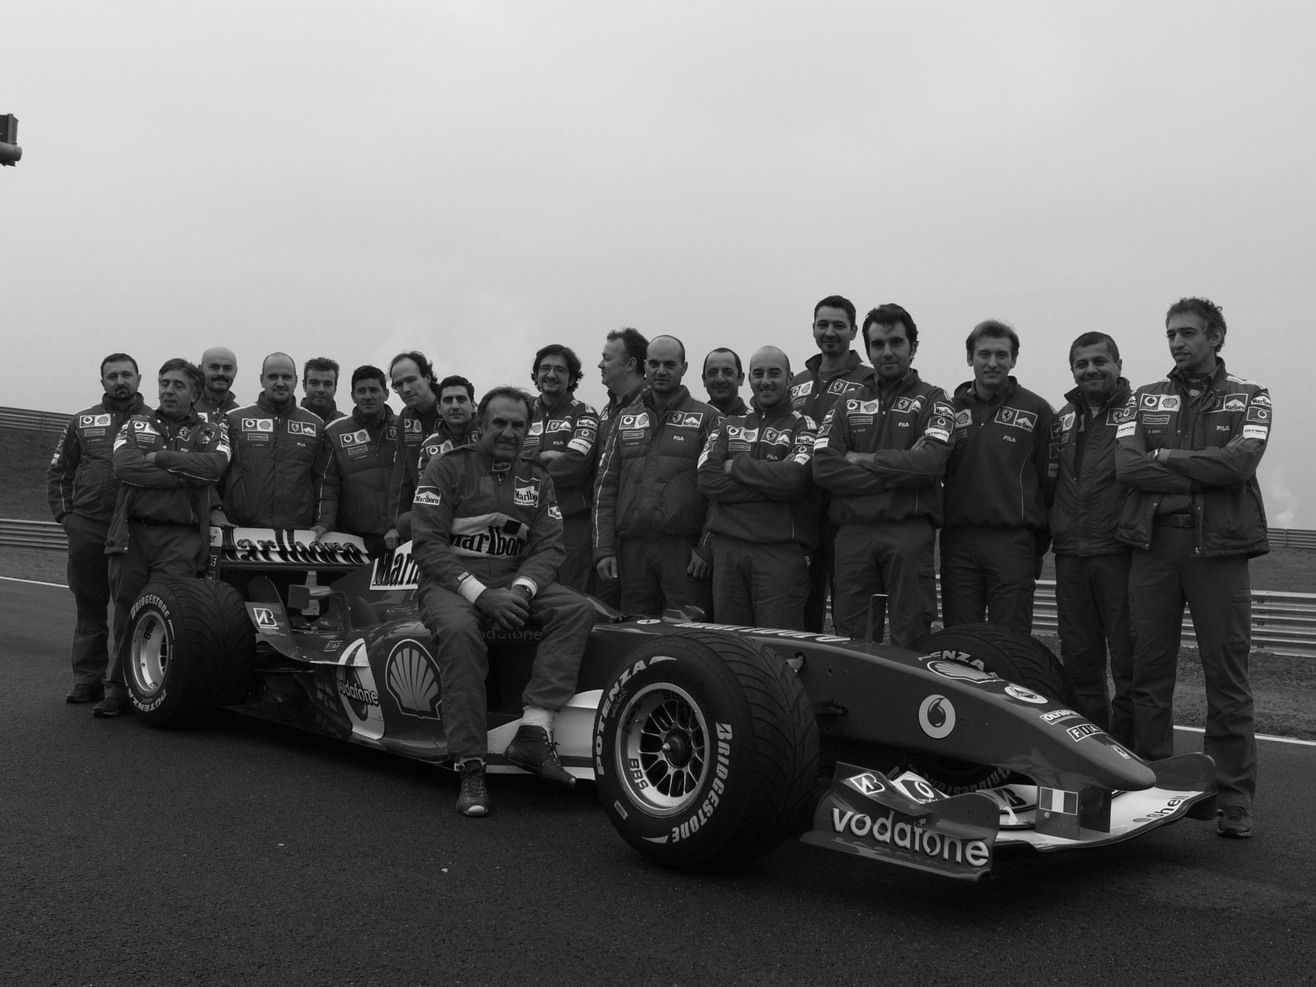 Carlos Reutemann, F1